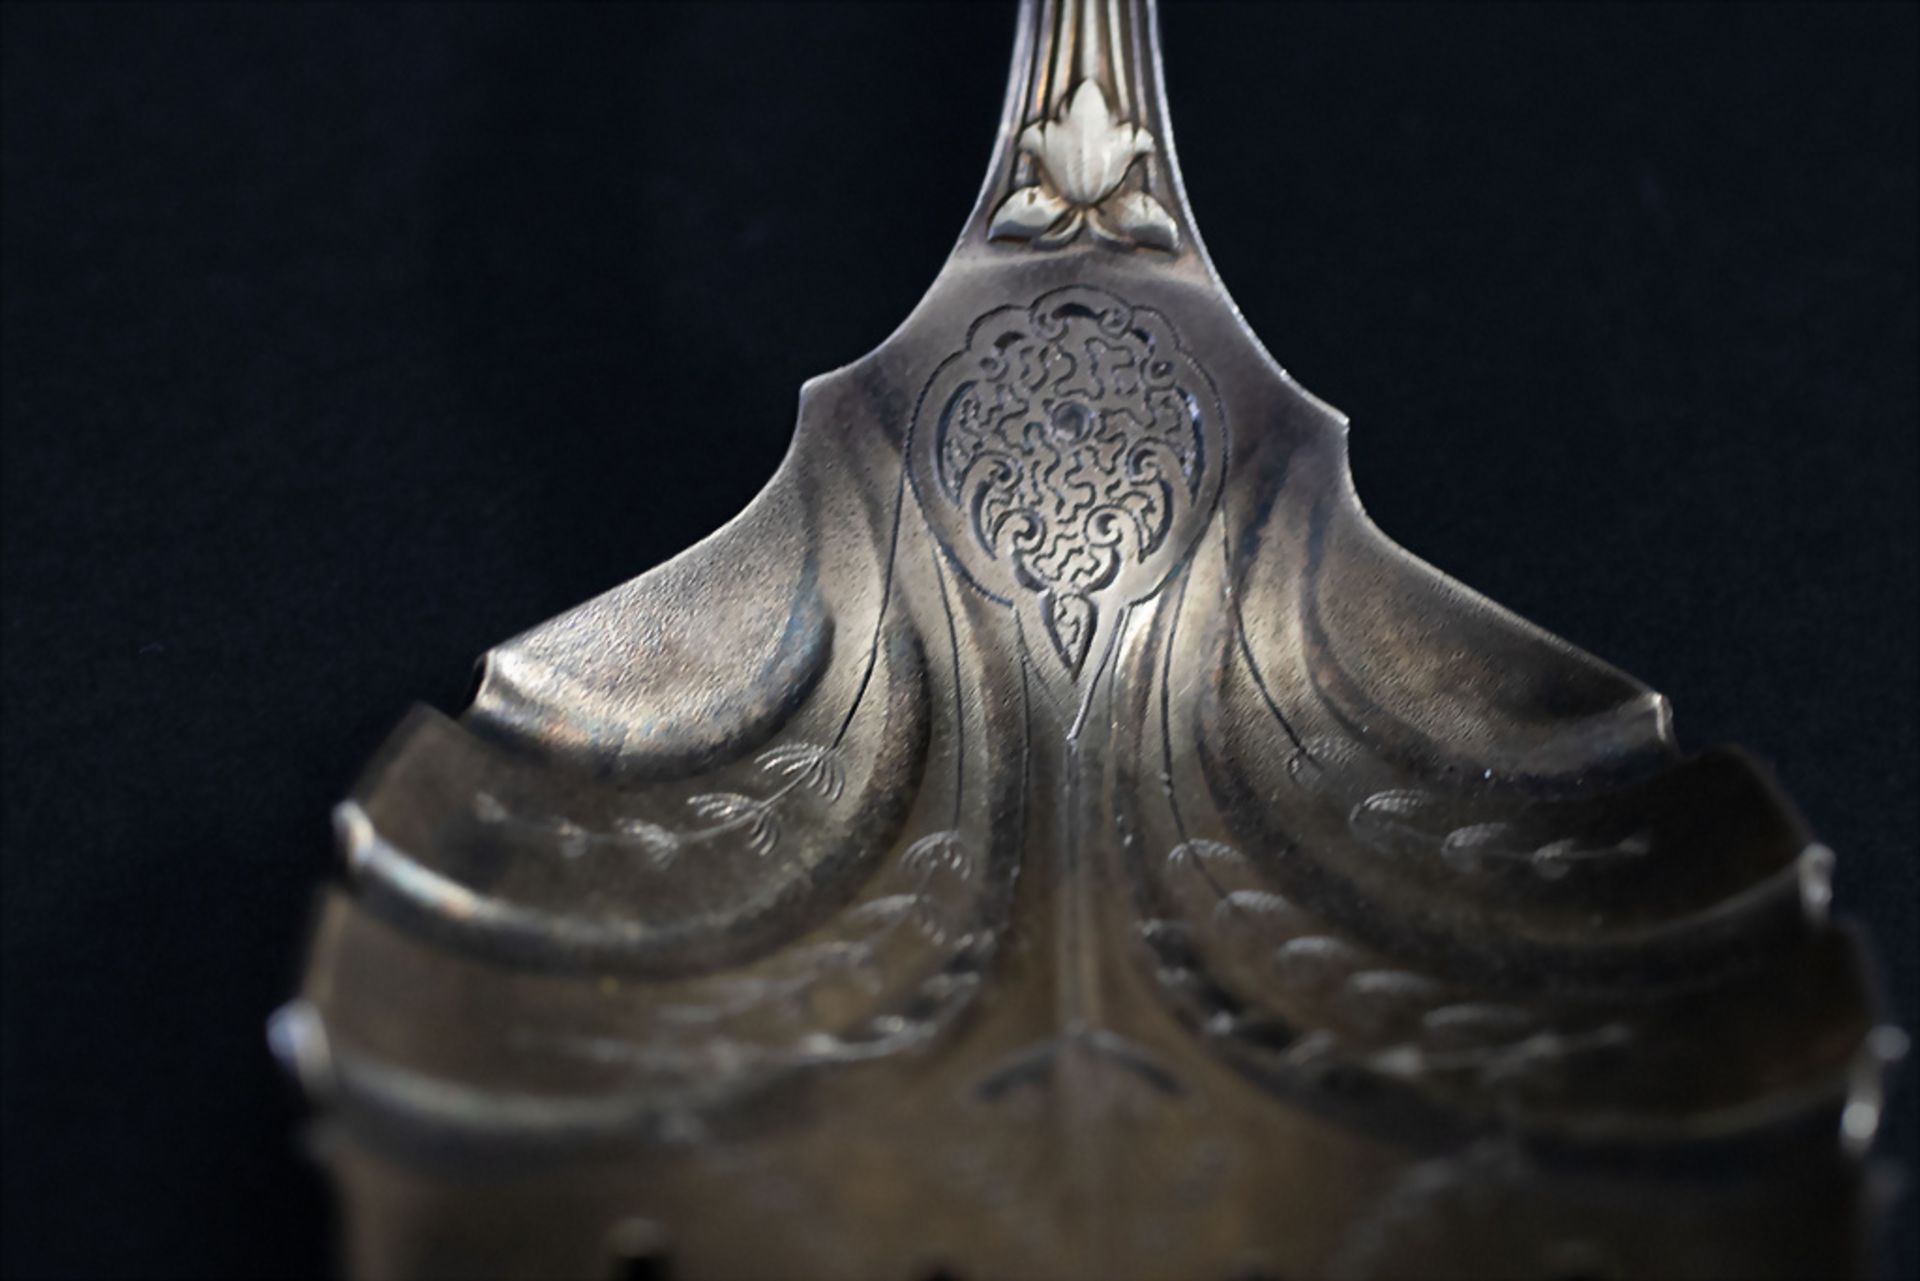 3 Teile Vorlegebesteck / 3 pieces of silver serving cutlery, Tiffany, um 1890 - Bild 7 aus 10